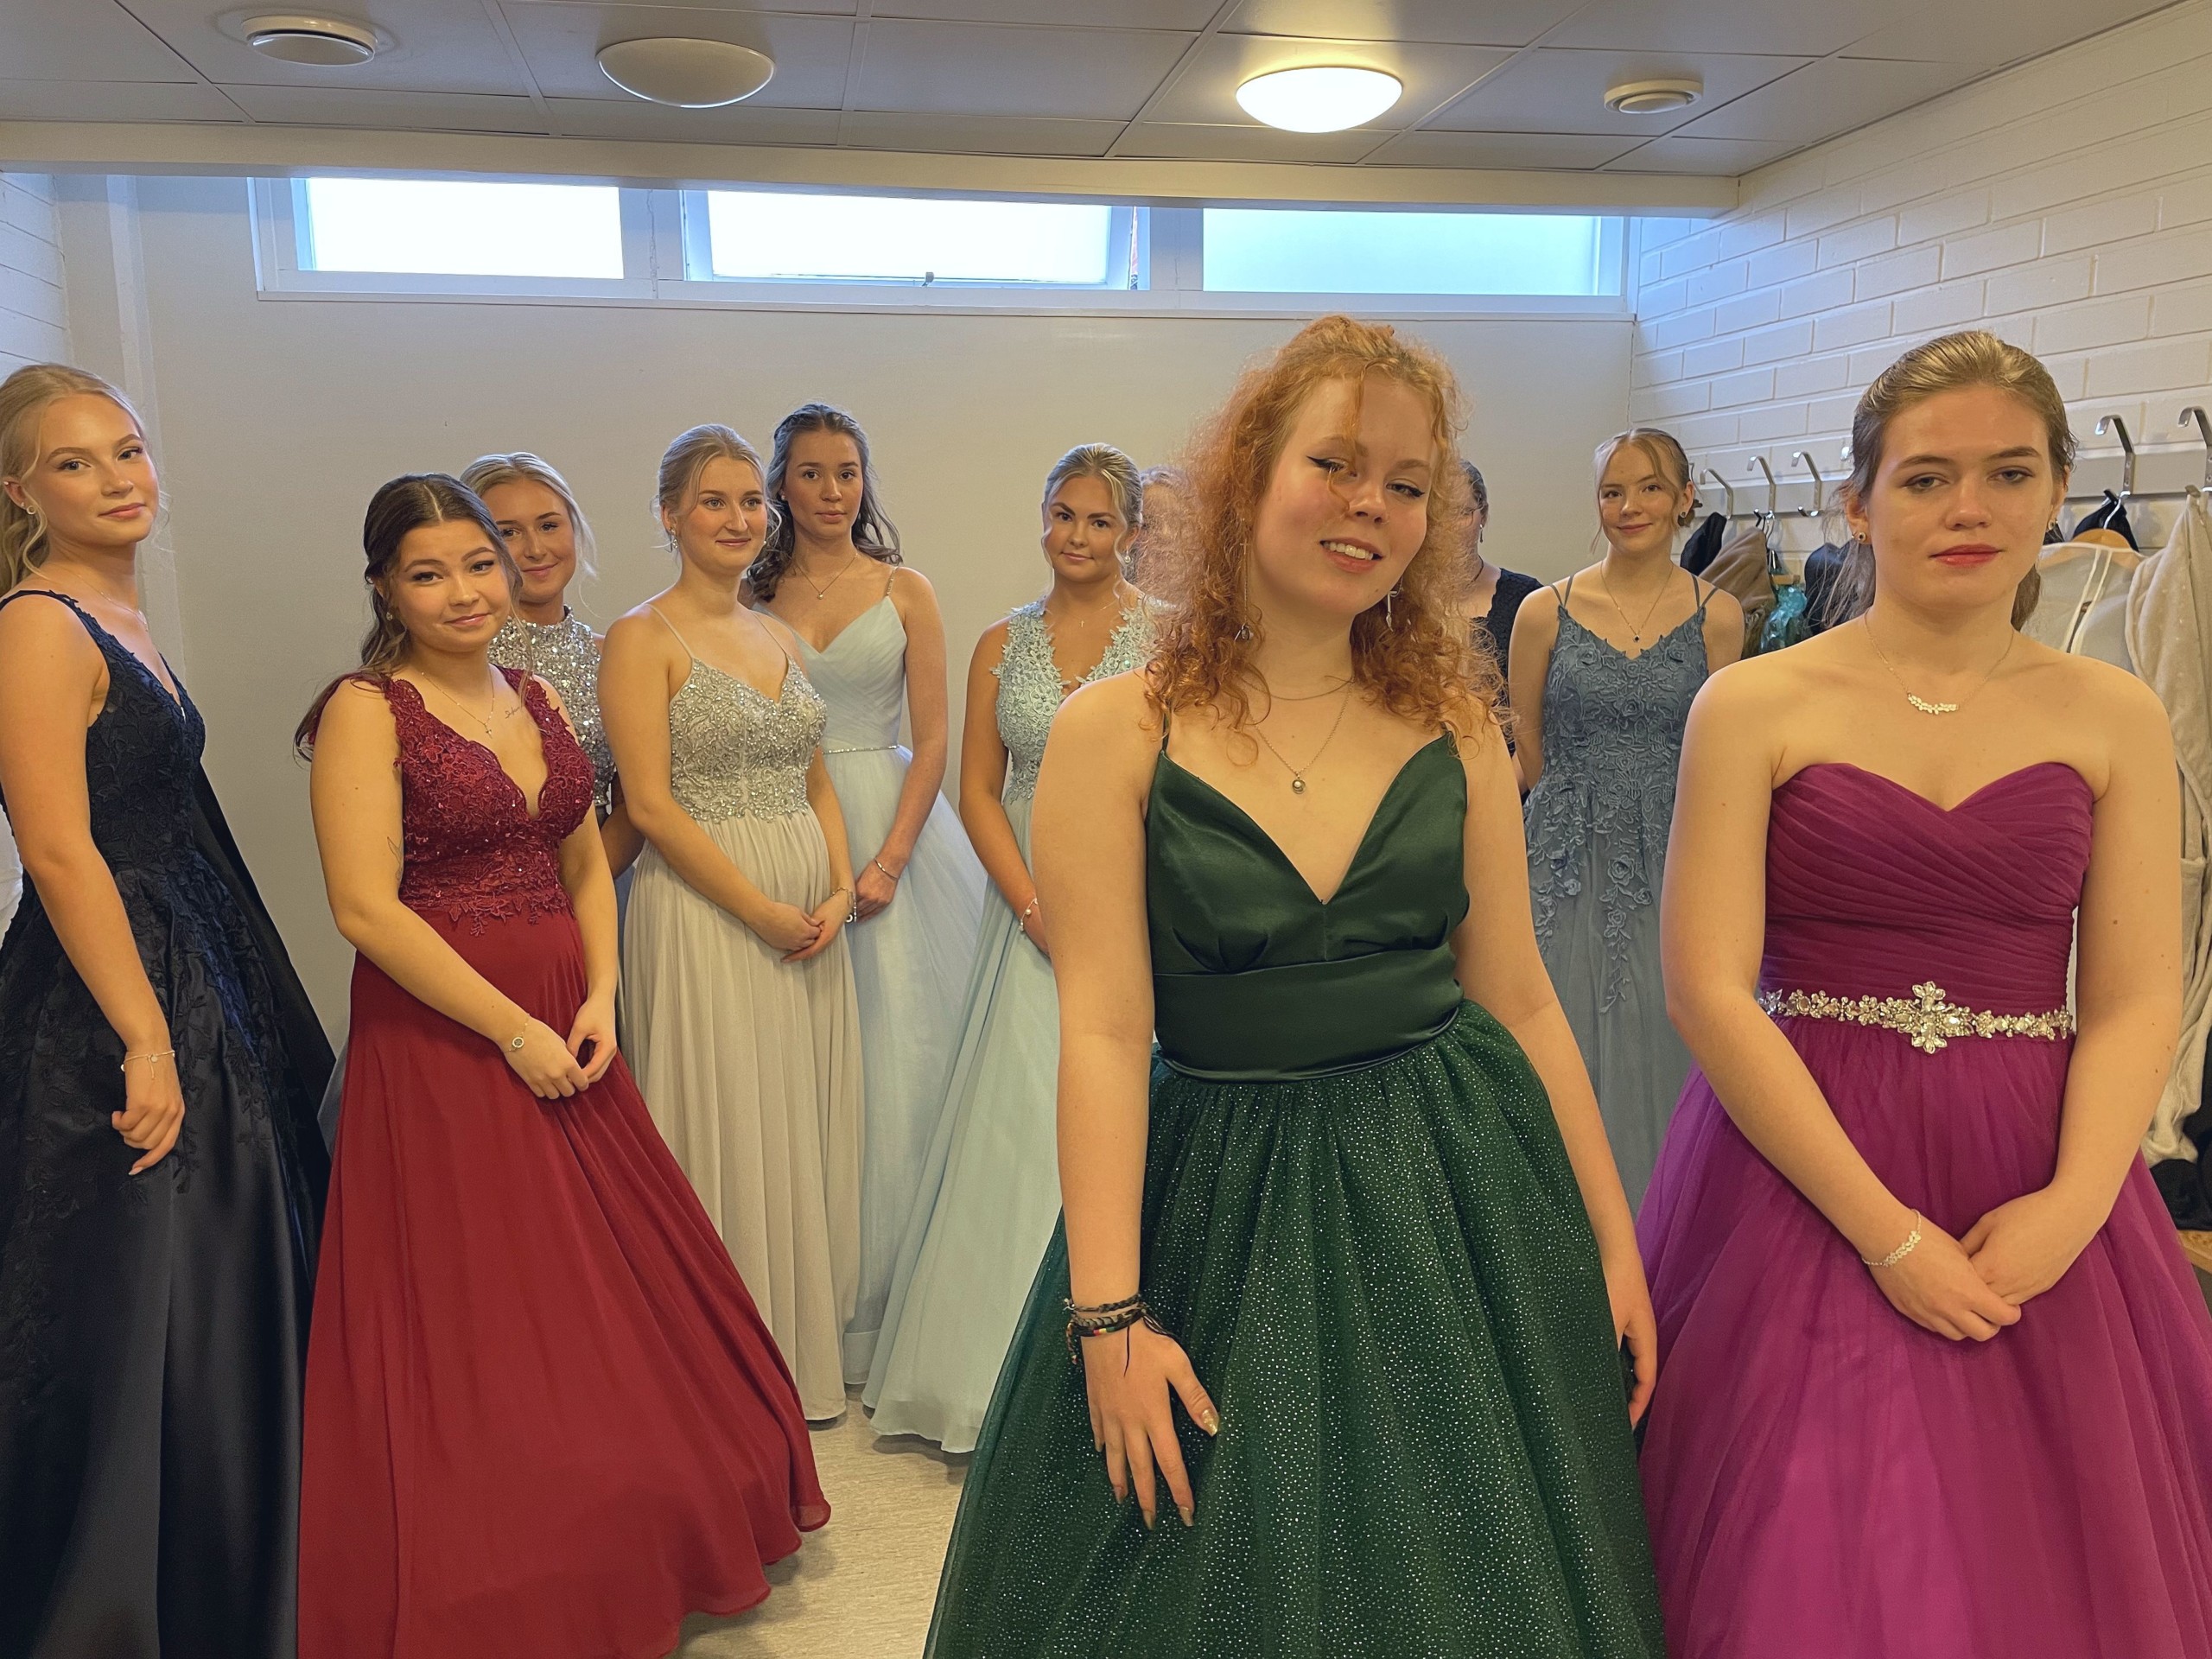 flickor i fina klänningar i ett omklädningsrum.